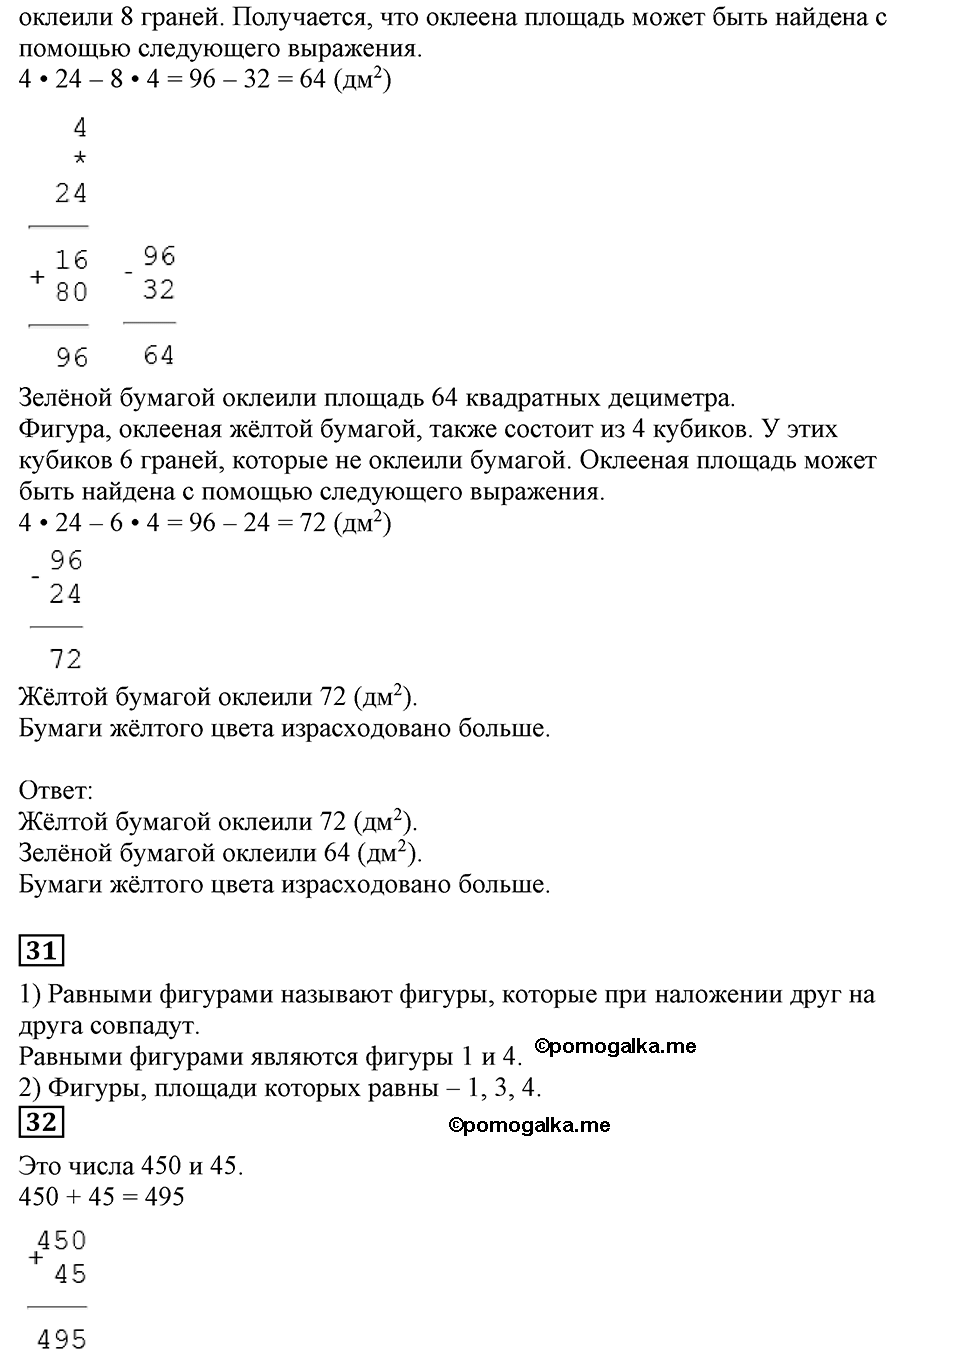 Страница №94 Часть 2 математика 3 класс Дорофеев